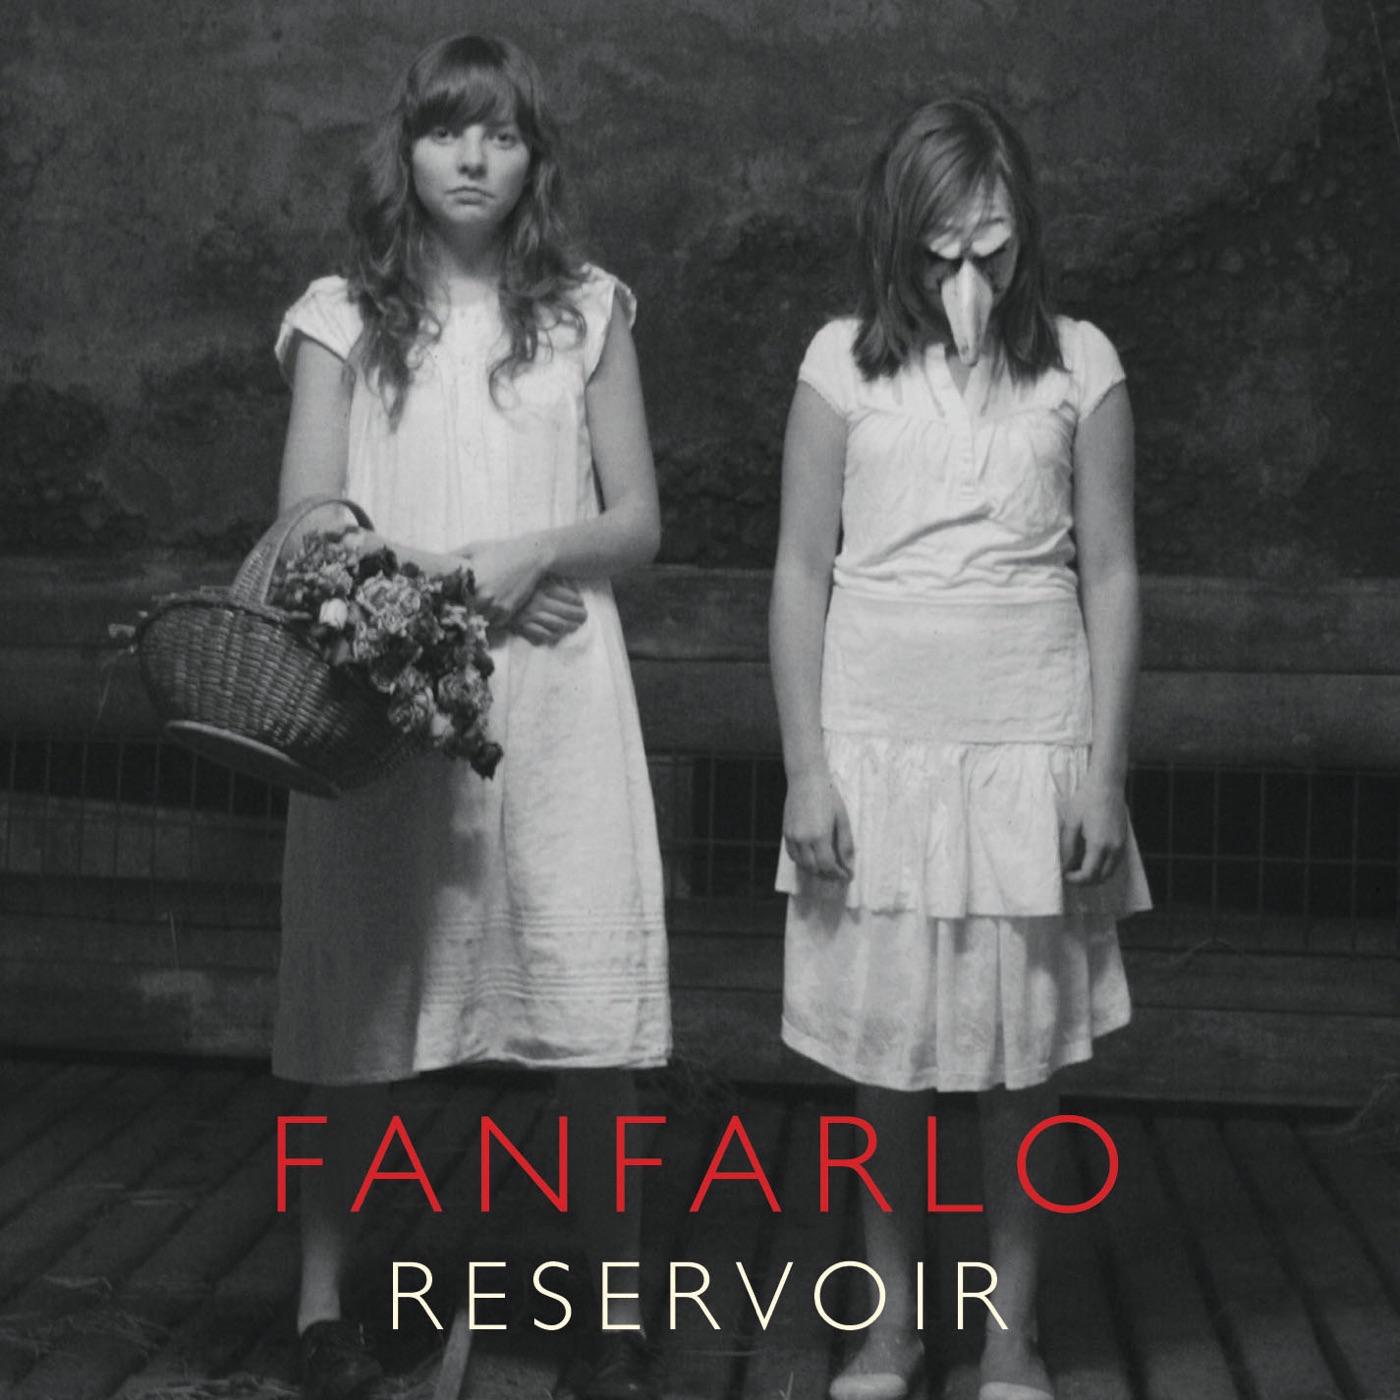 Reservoir by Fanfarlo